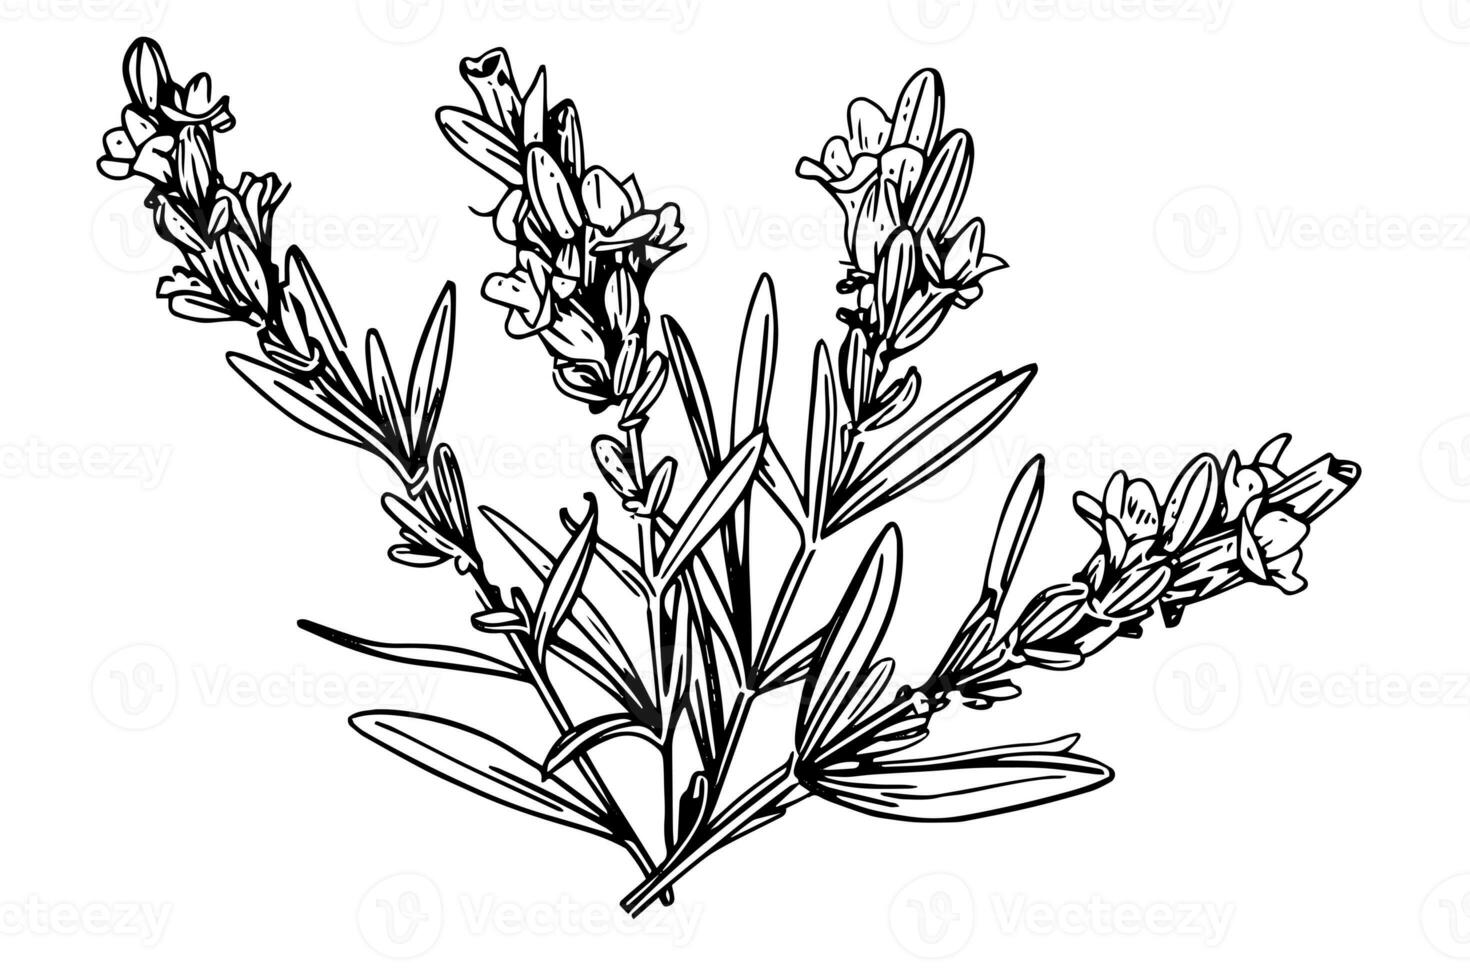 Floral botanical lavender flower hand drawn ink sketch.  Vector engraving illustration. photo